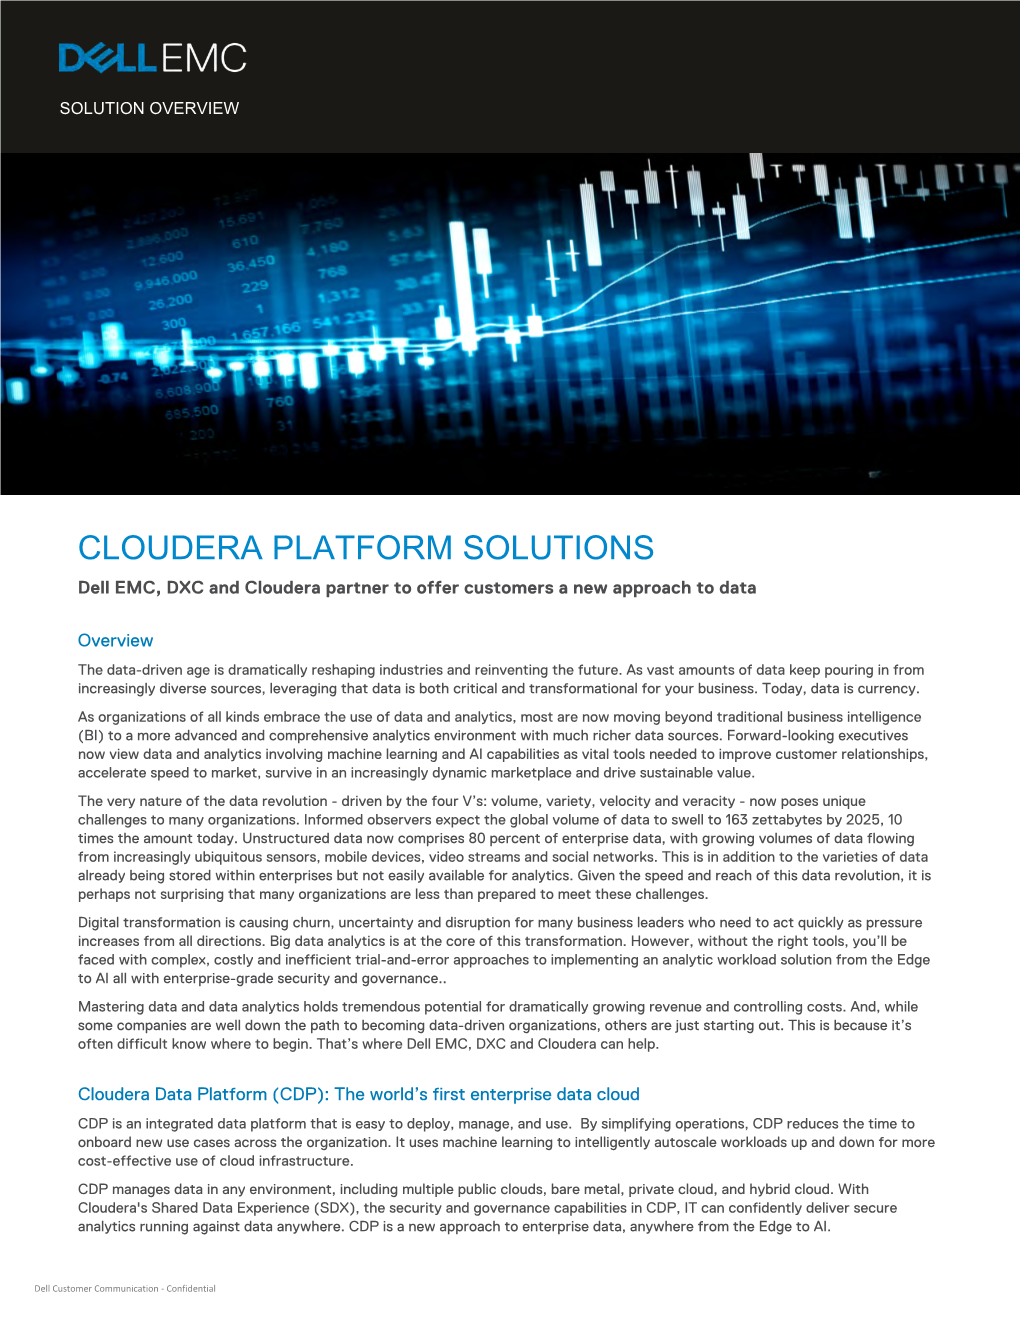 Dell EMC and DXC Cloudera Platform Solutions